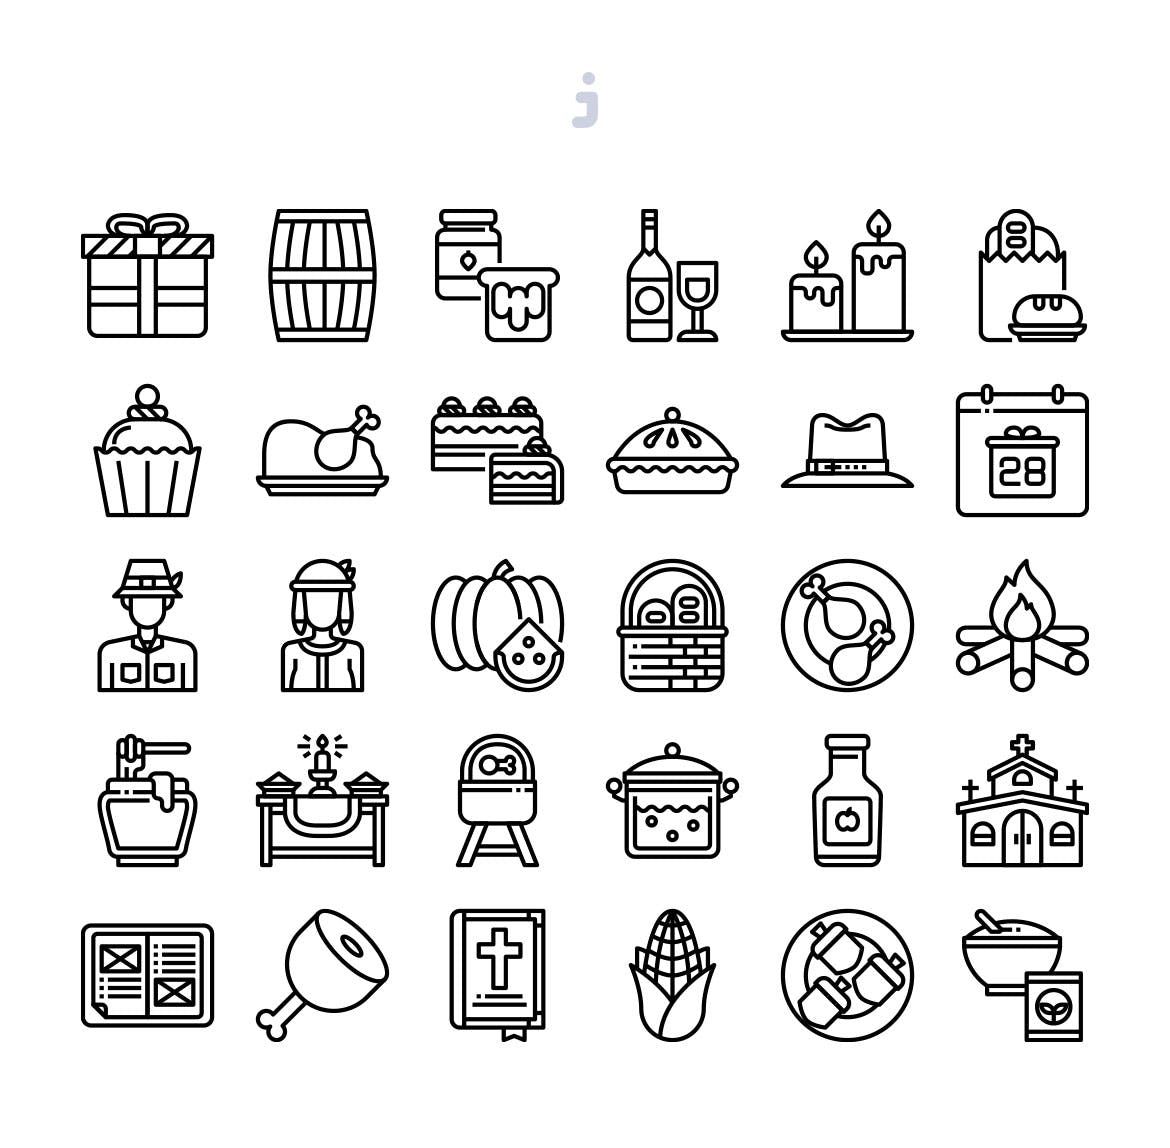 30枚感恩节节日主题矢量图标 30 Thanksgiving Icons插图(2)